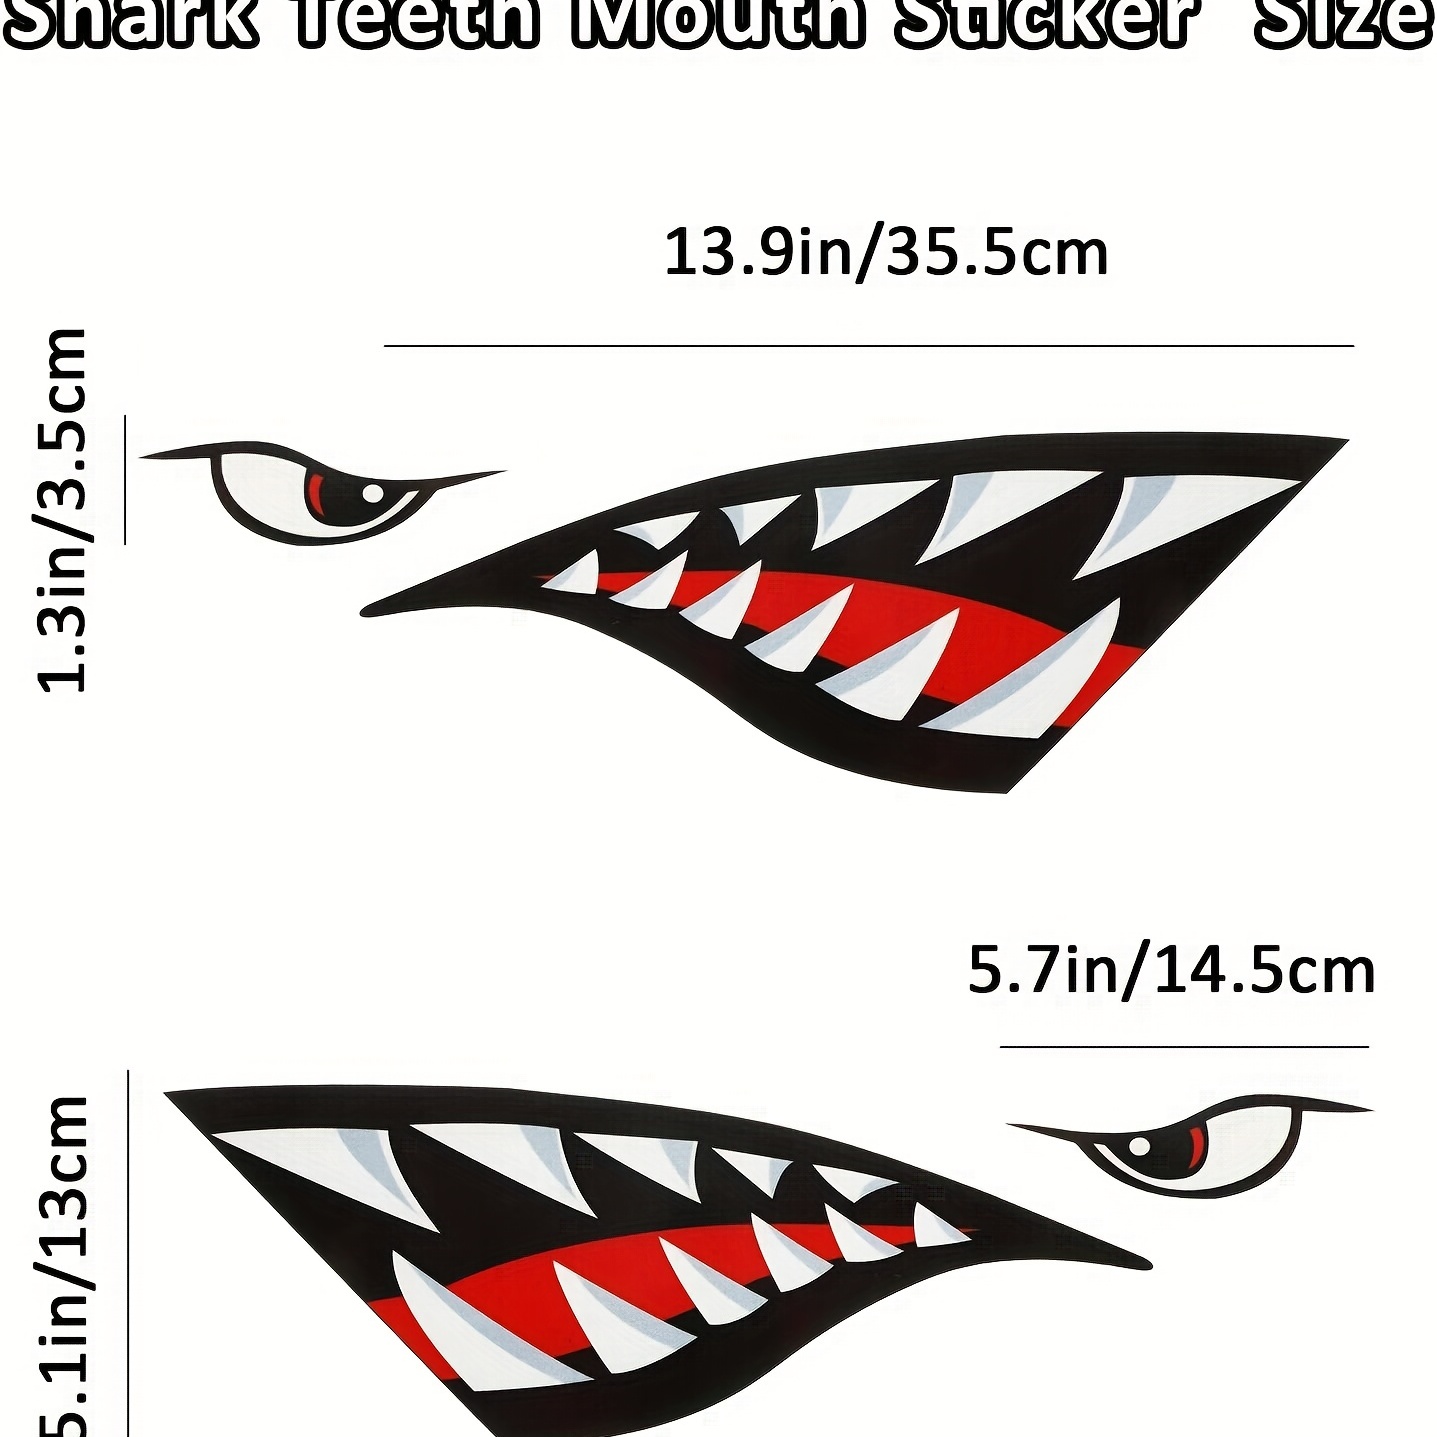 shark teeth decal